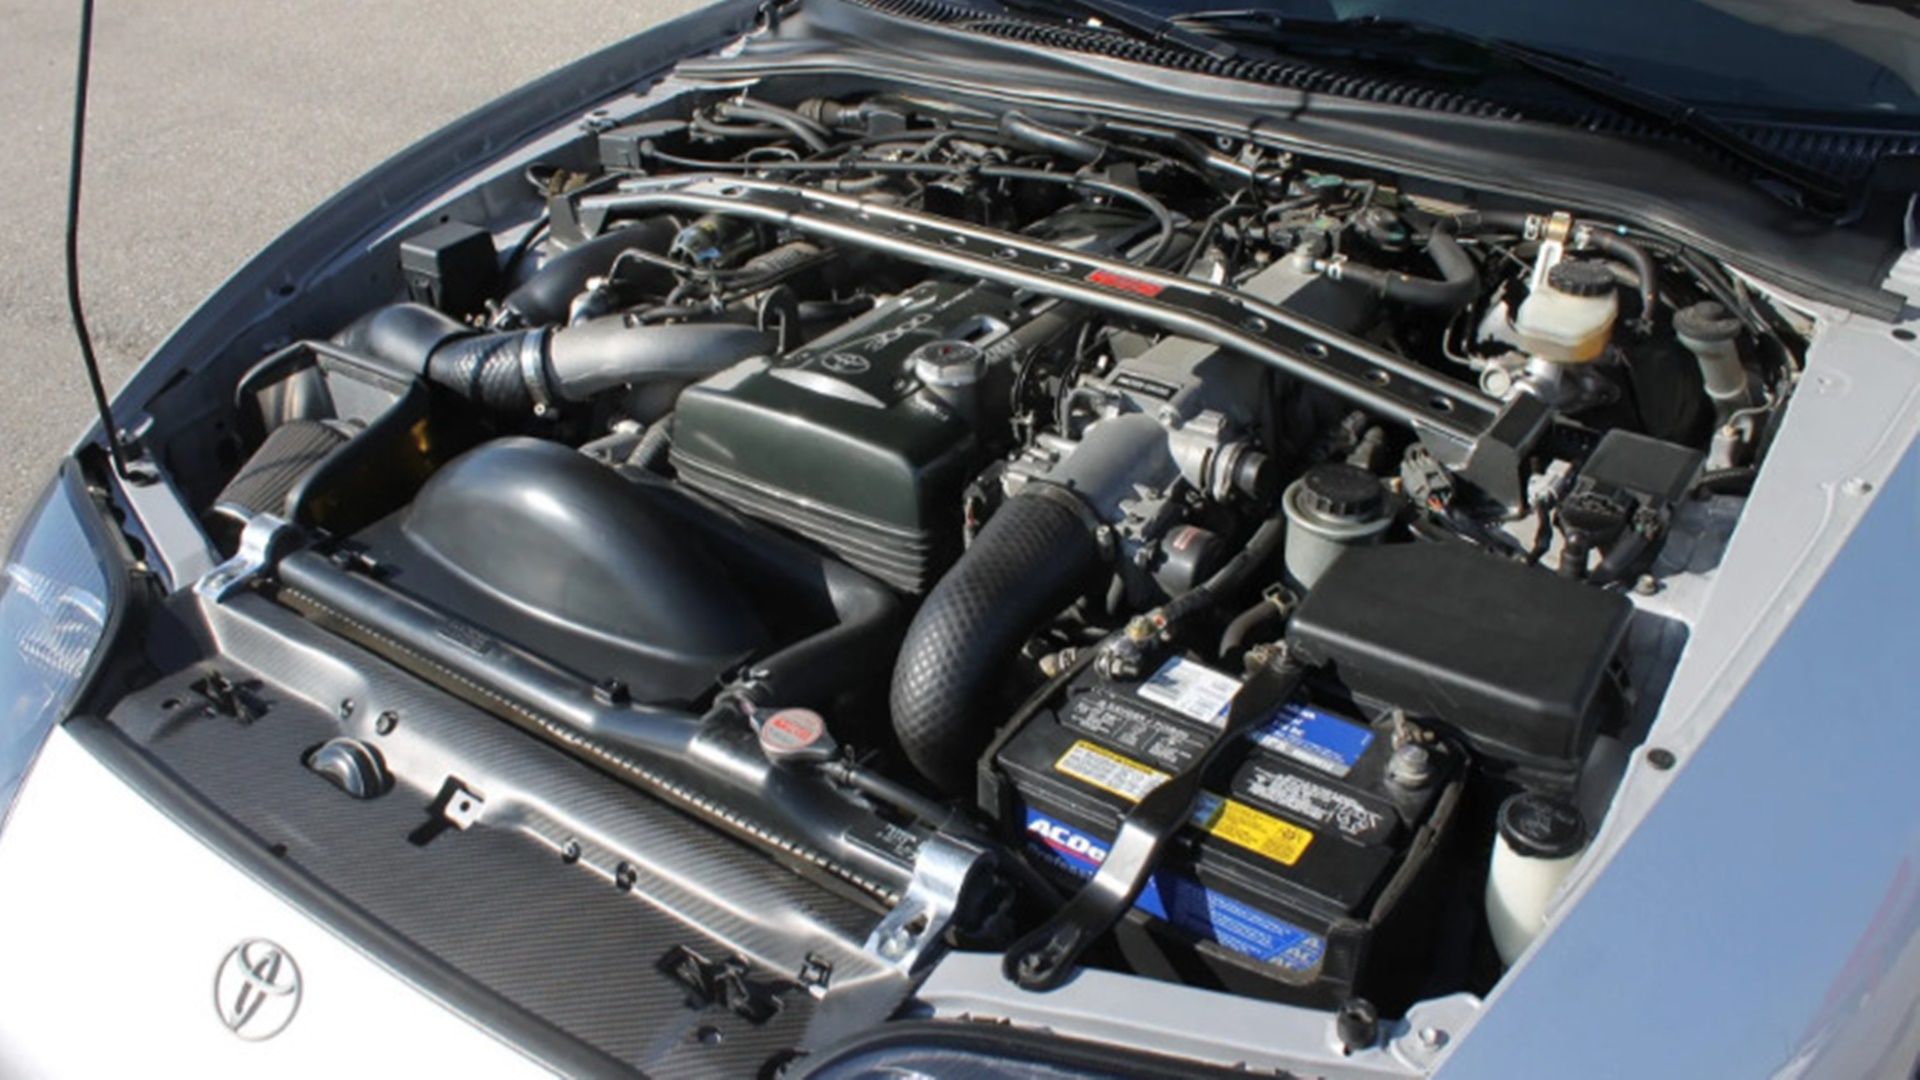 MK4 Toyota Supra engine